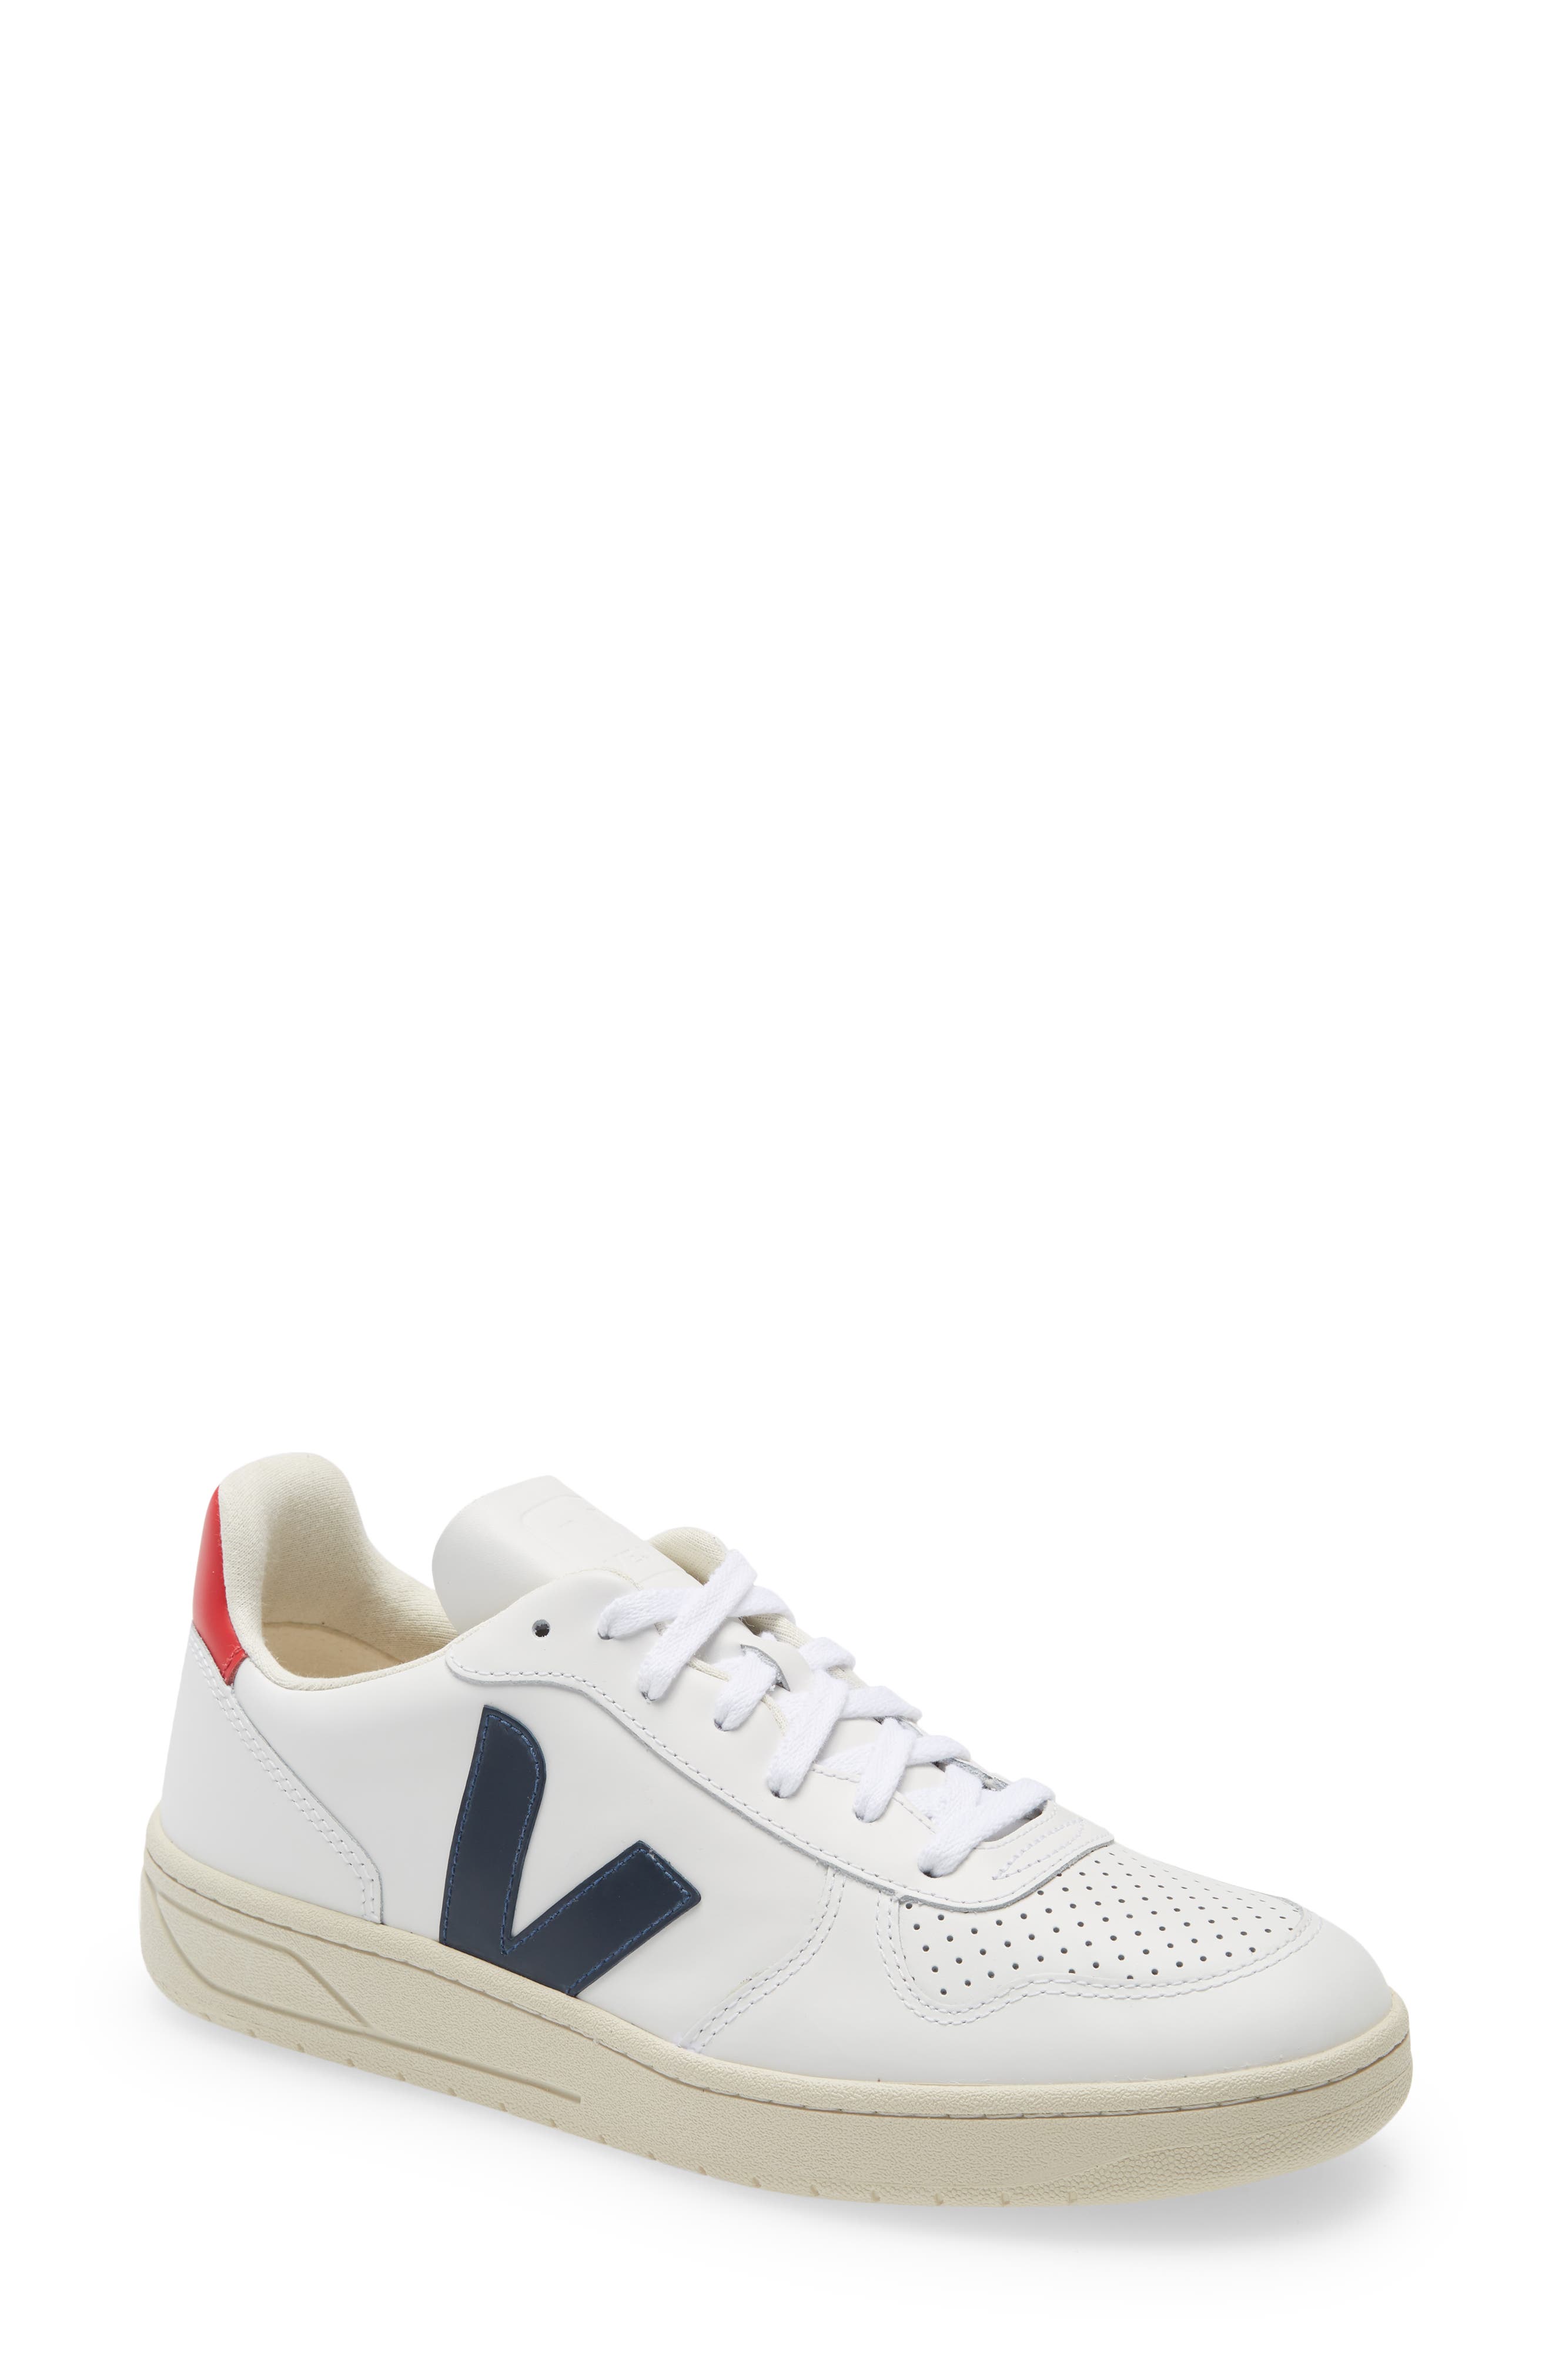 Veja V-10 Sneaker in Extra White/nautico at Nordstrom, Size 41Eu